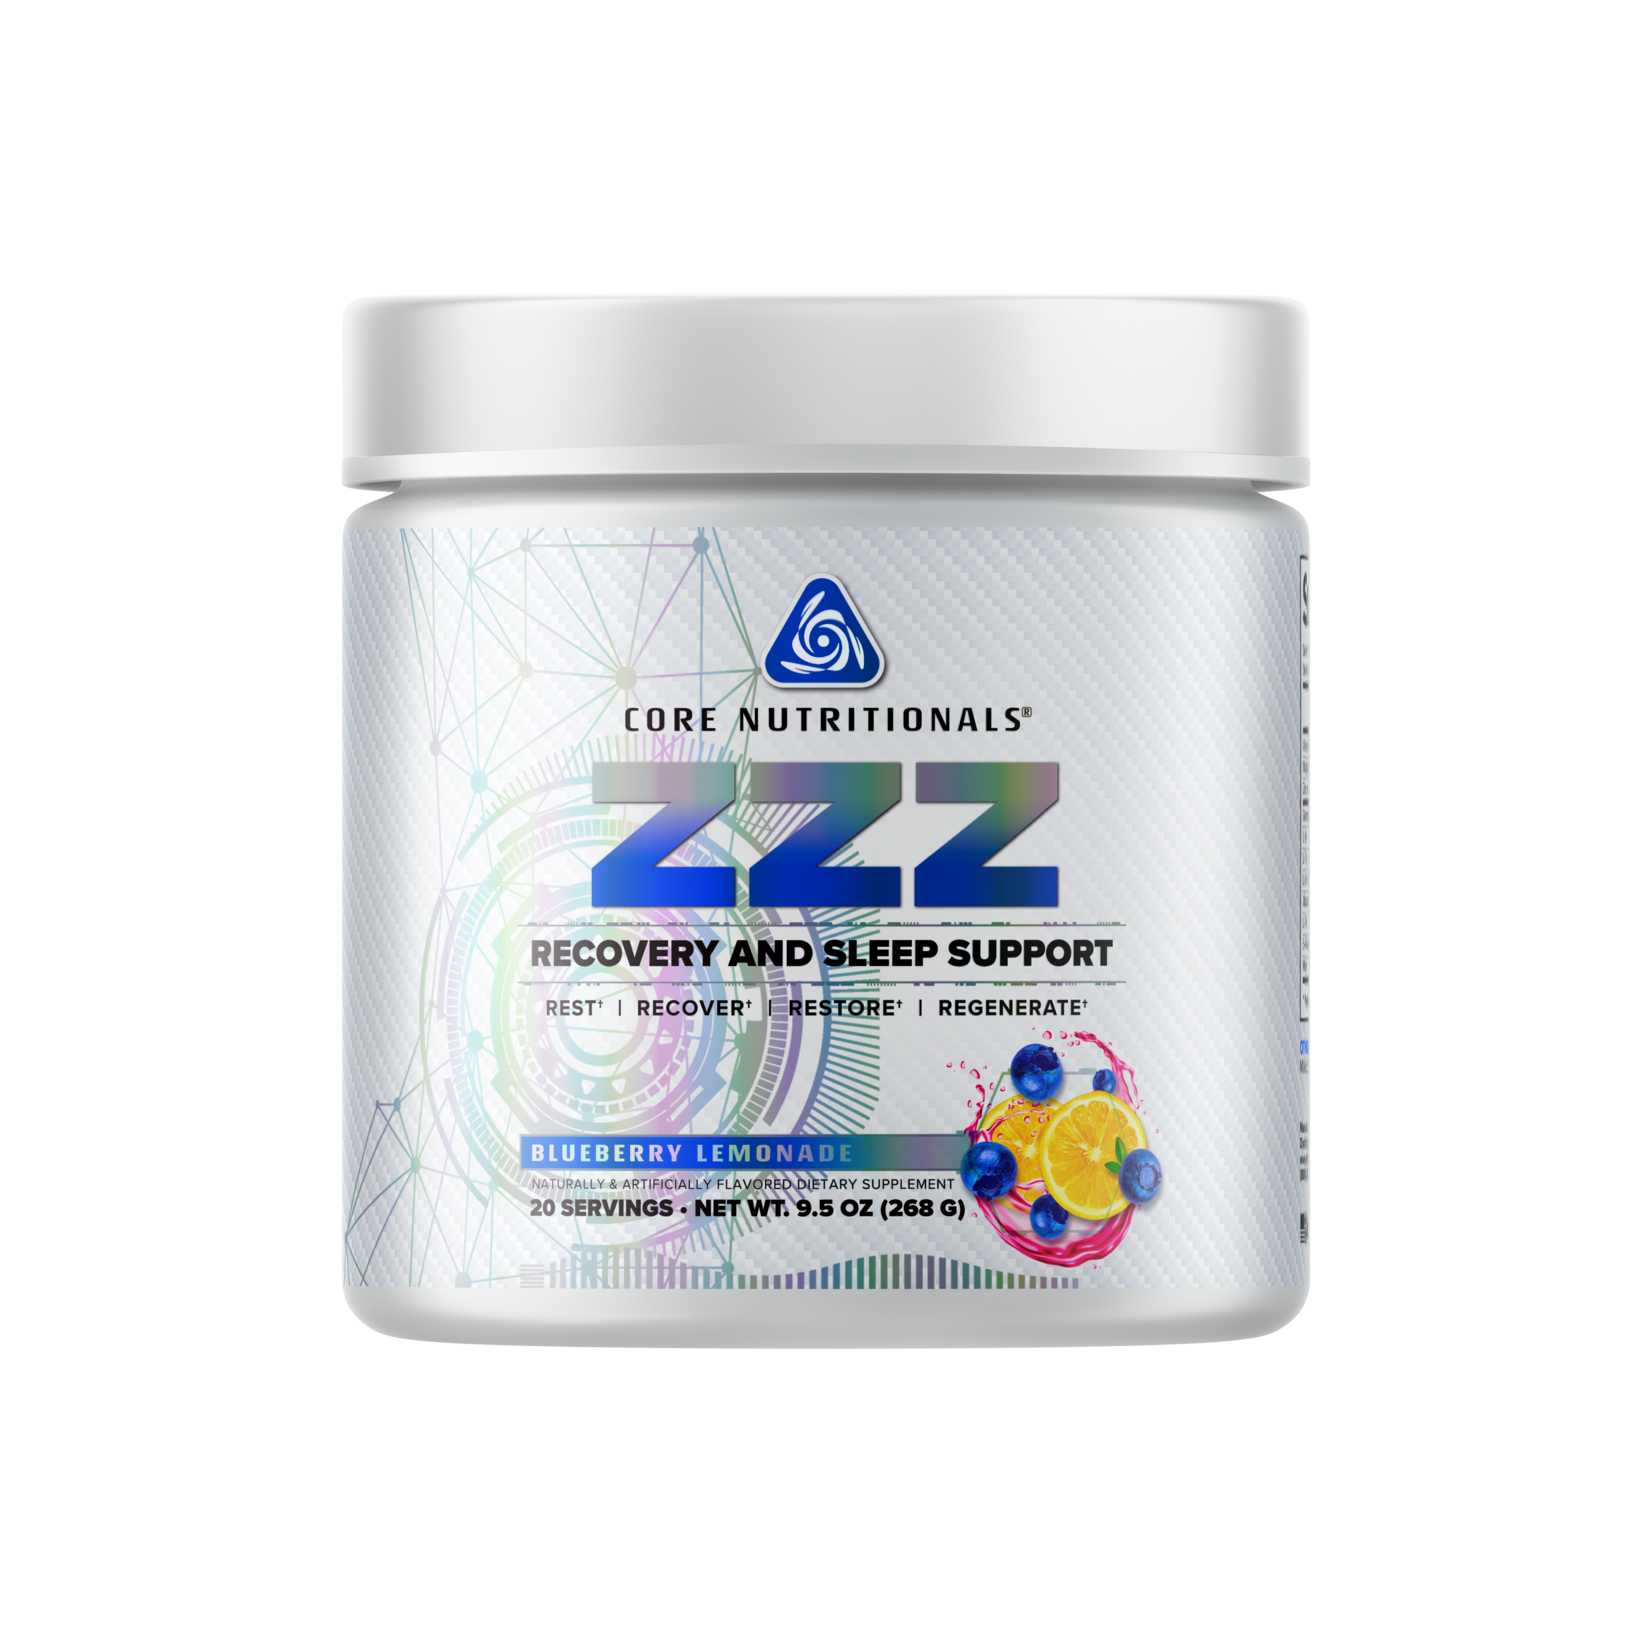 Core Nutritionals Core ZZZ Blueberry Lemonade